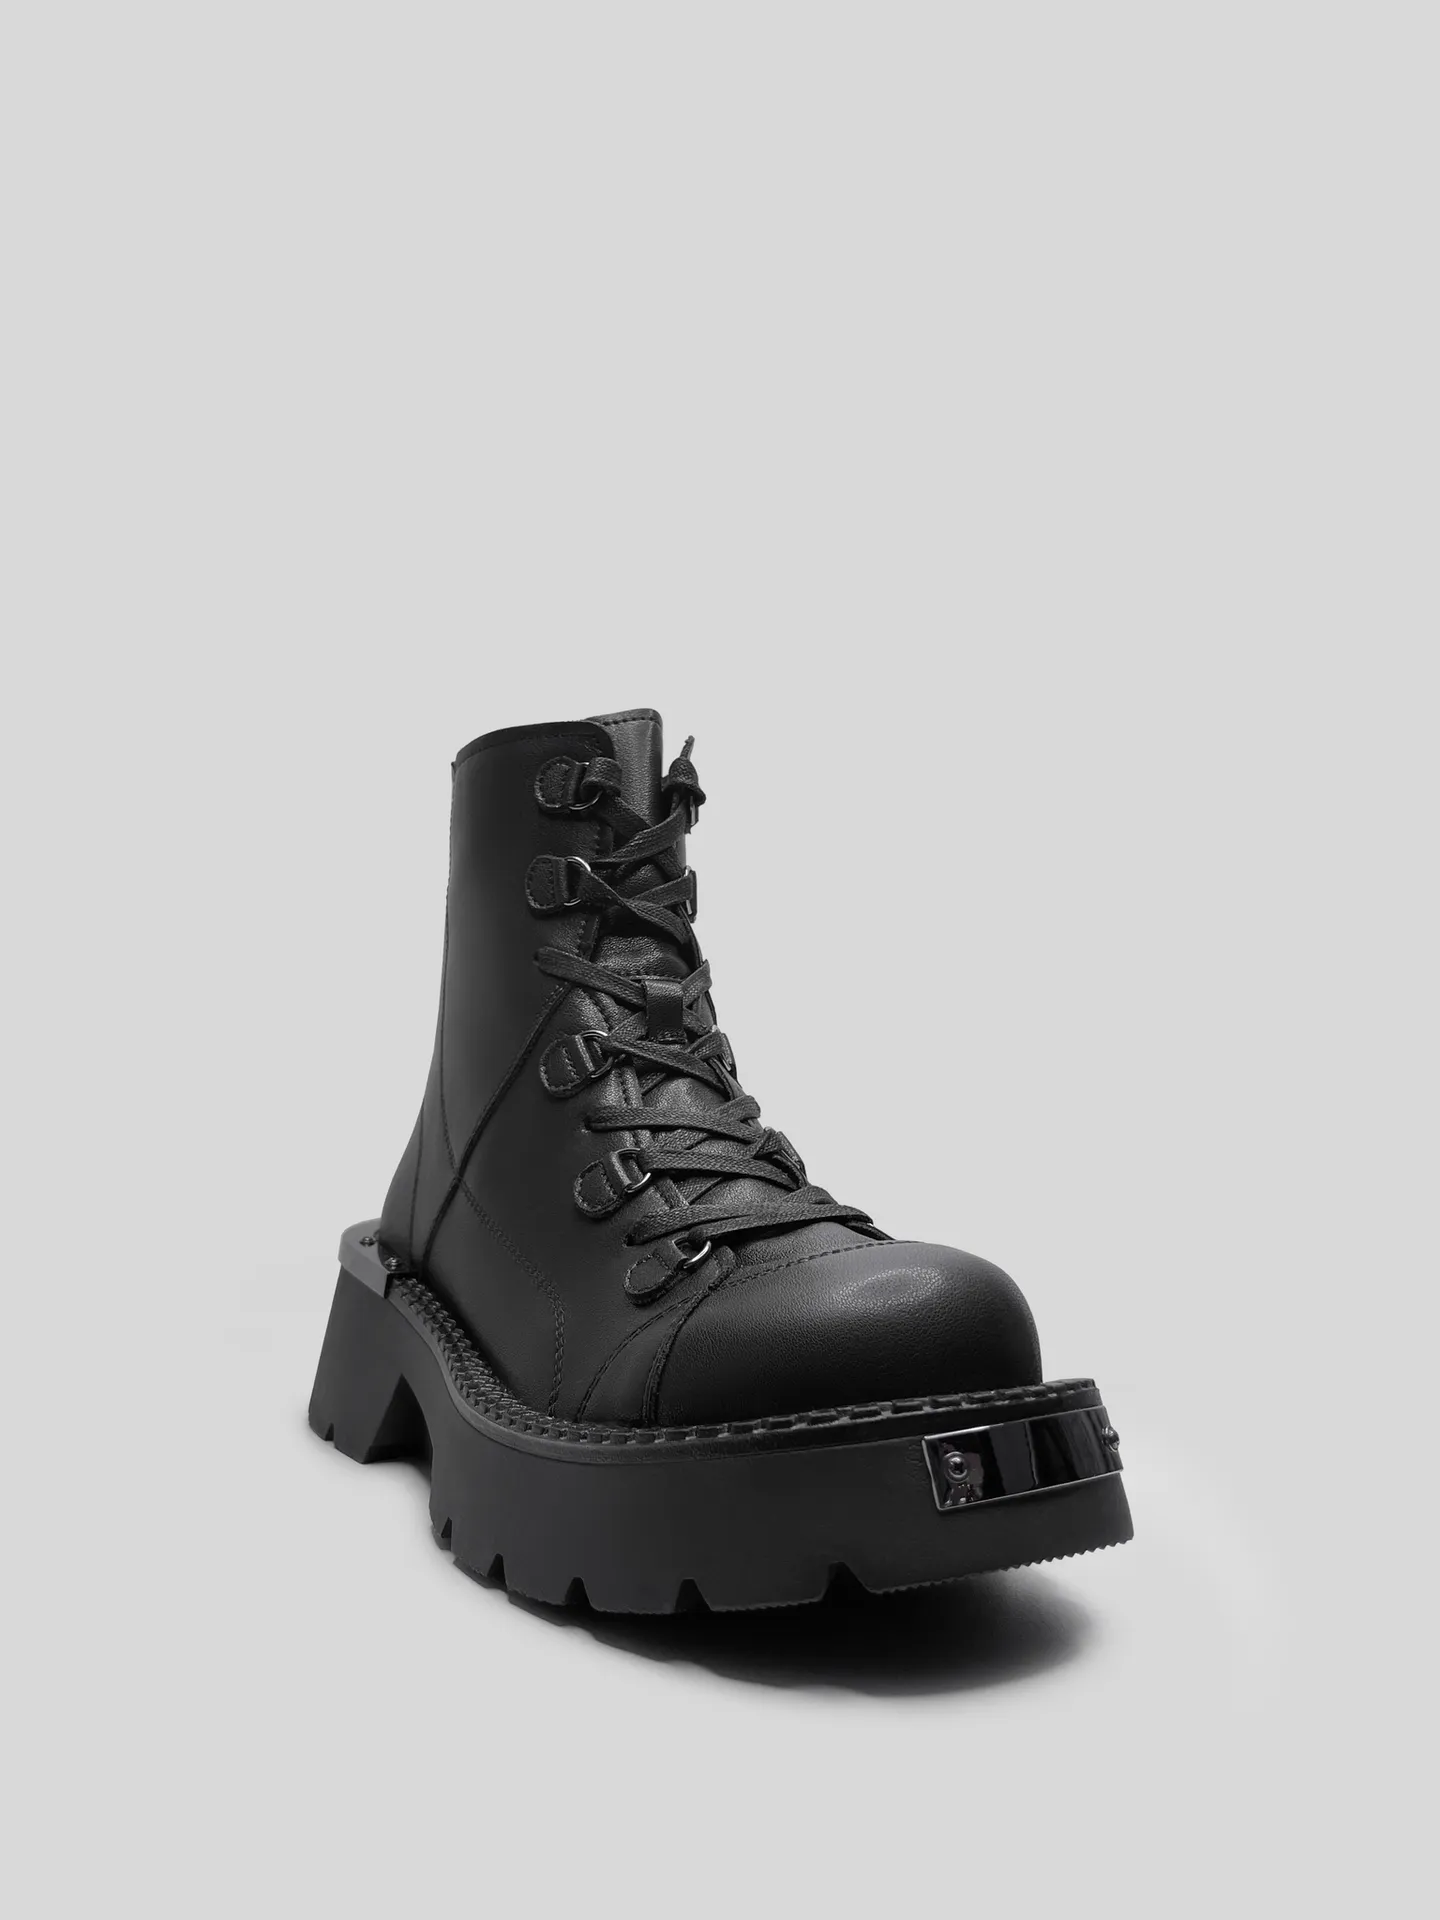 Ботинки Egga QXP523-1 на молнии сзади и шнуровкой спереди с металлическими вставками купить